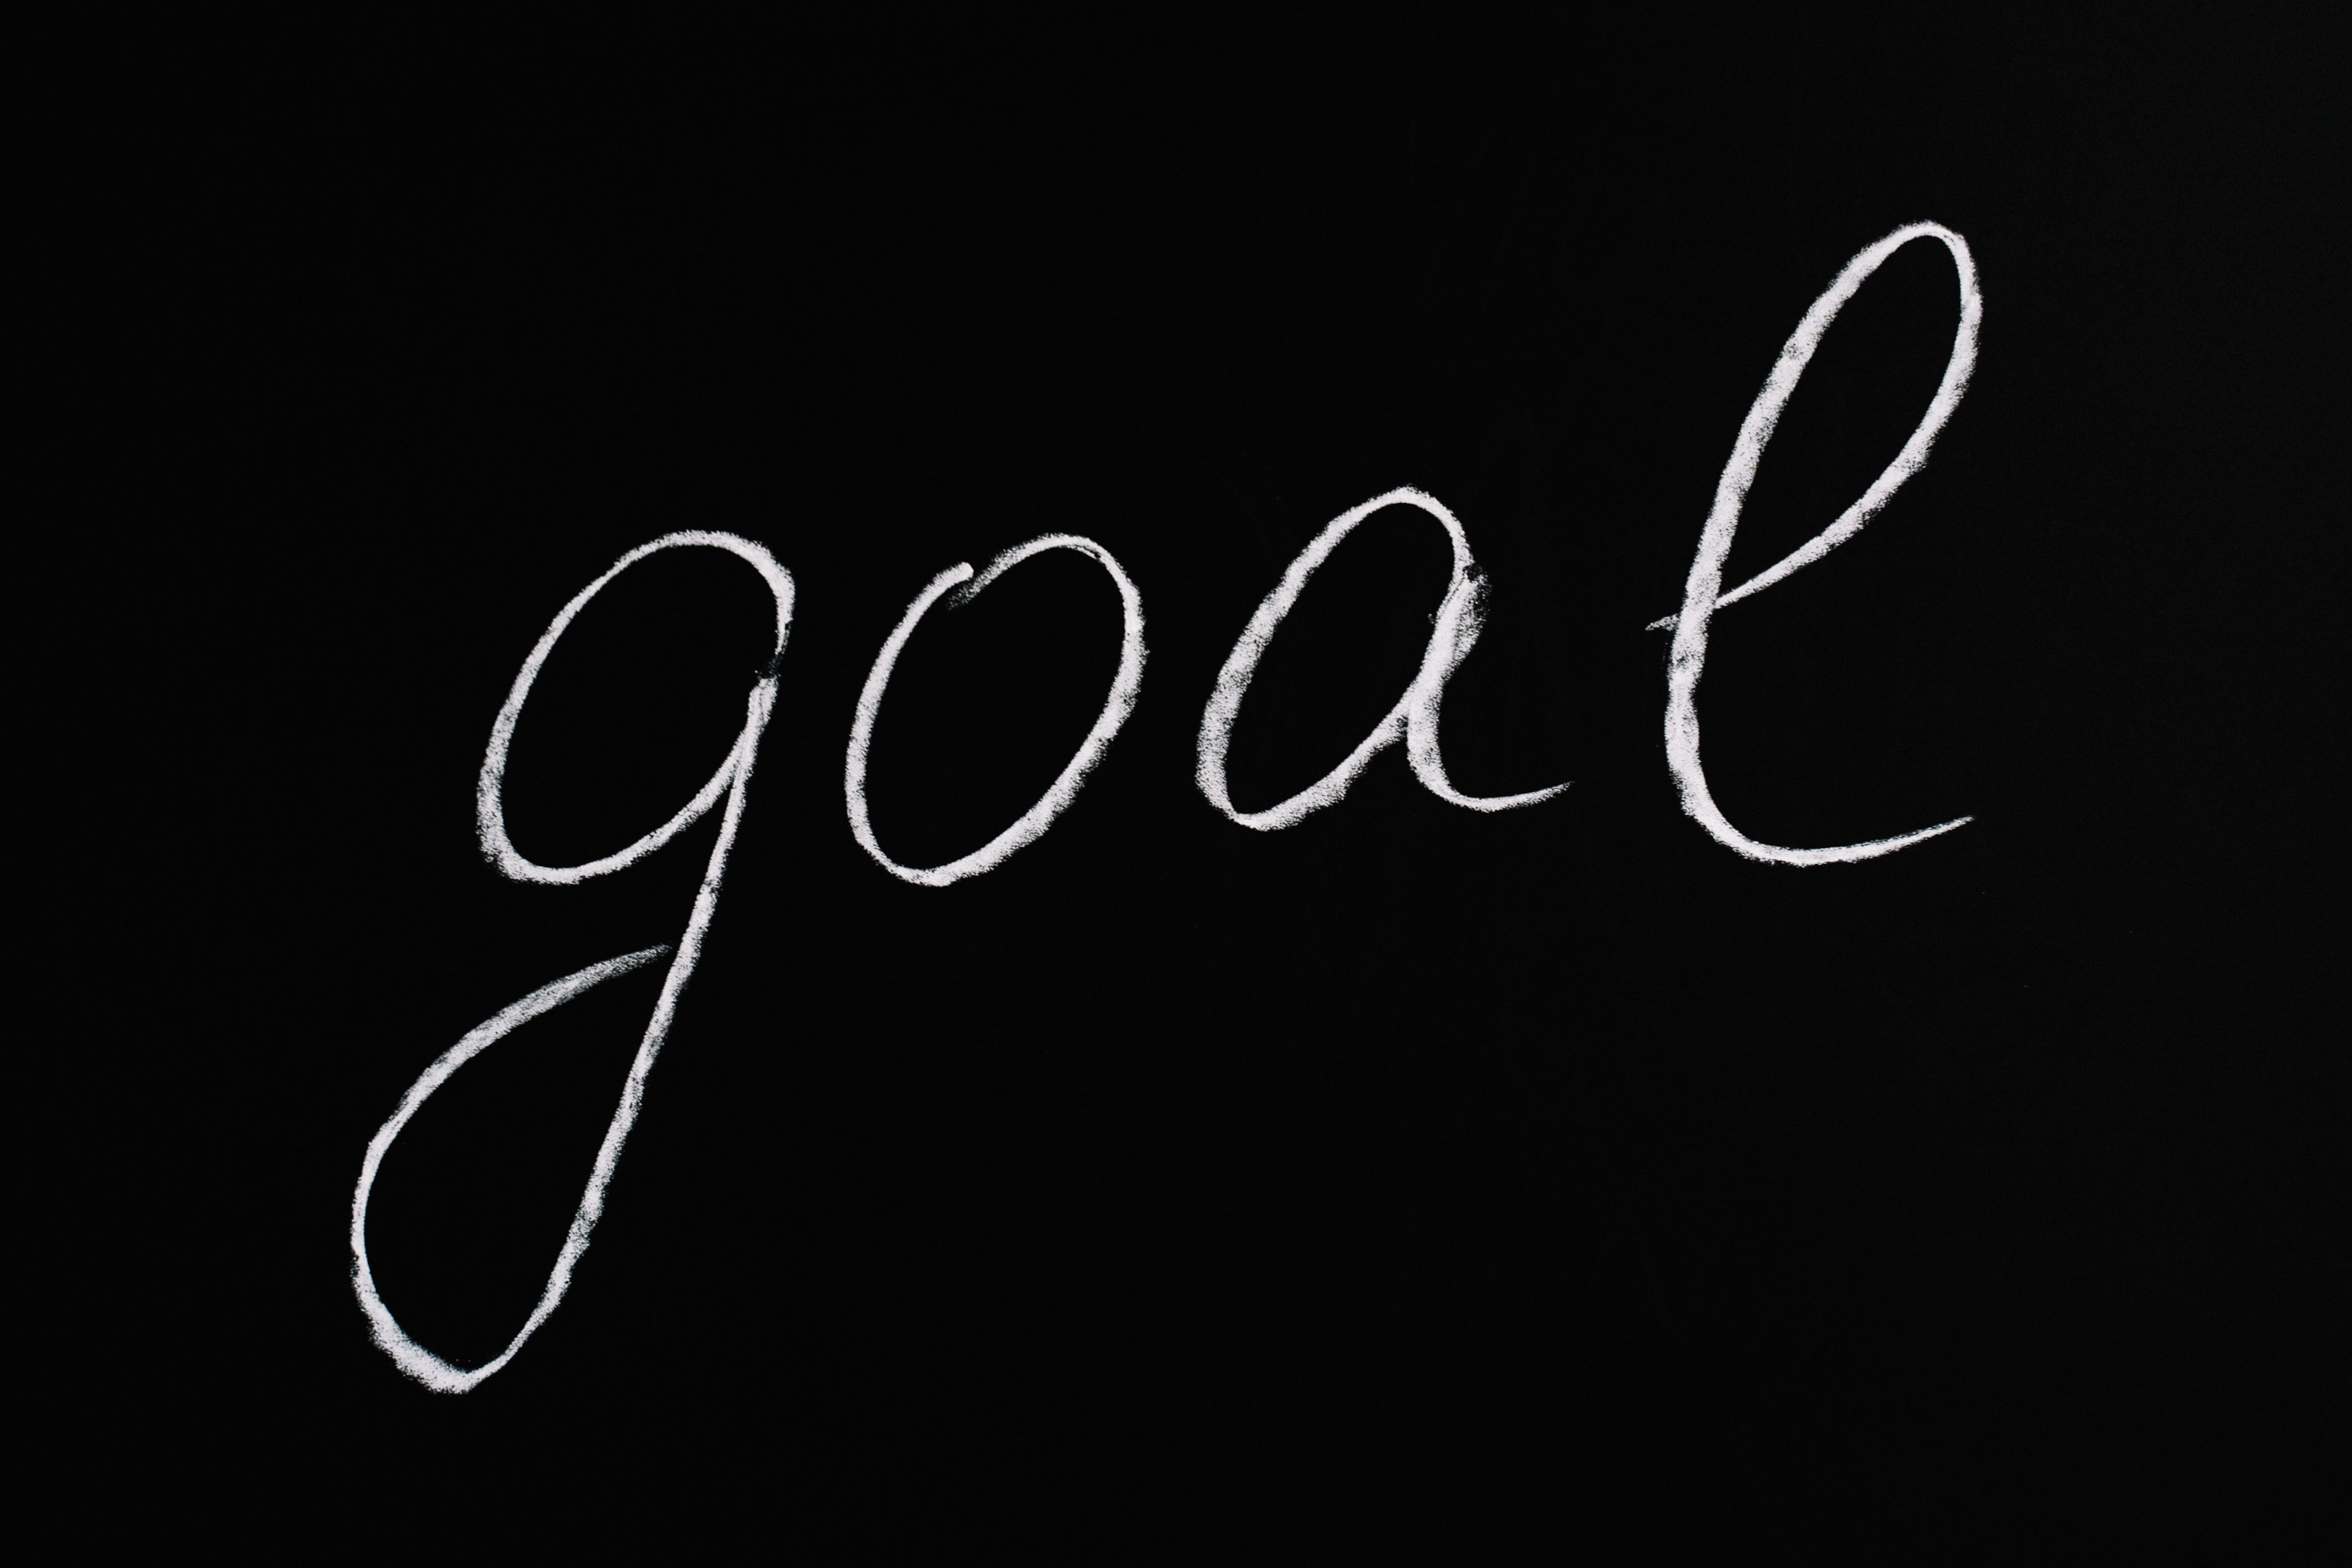 Letter Goal written on a blackboard.